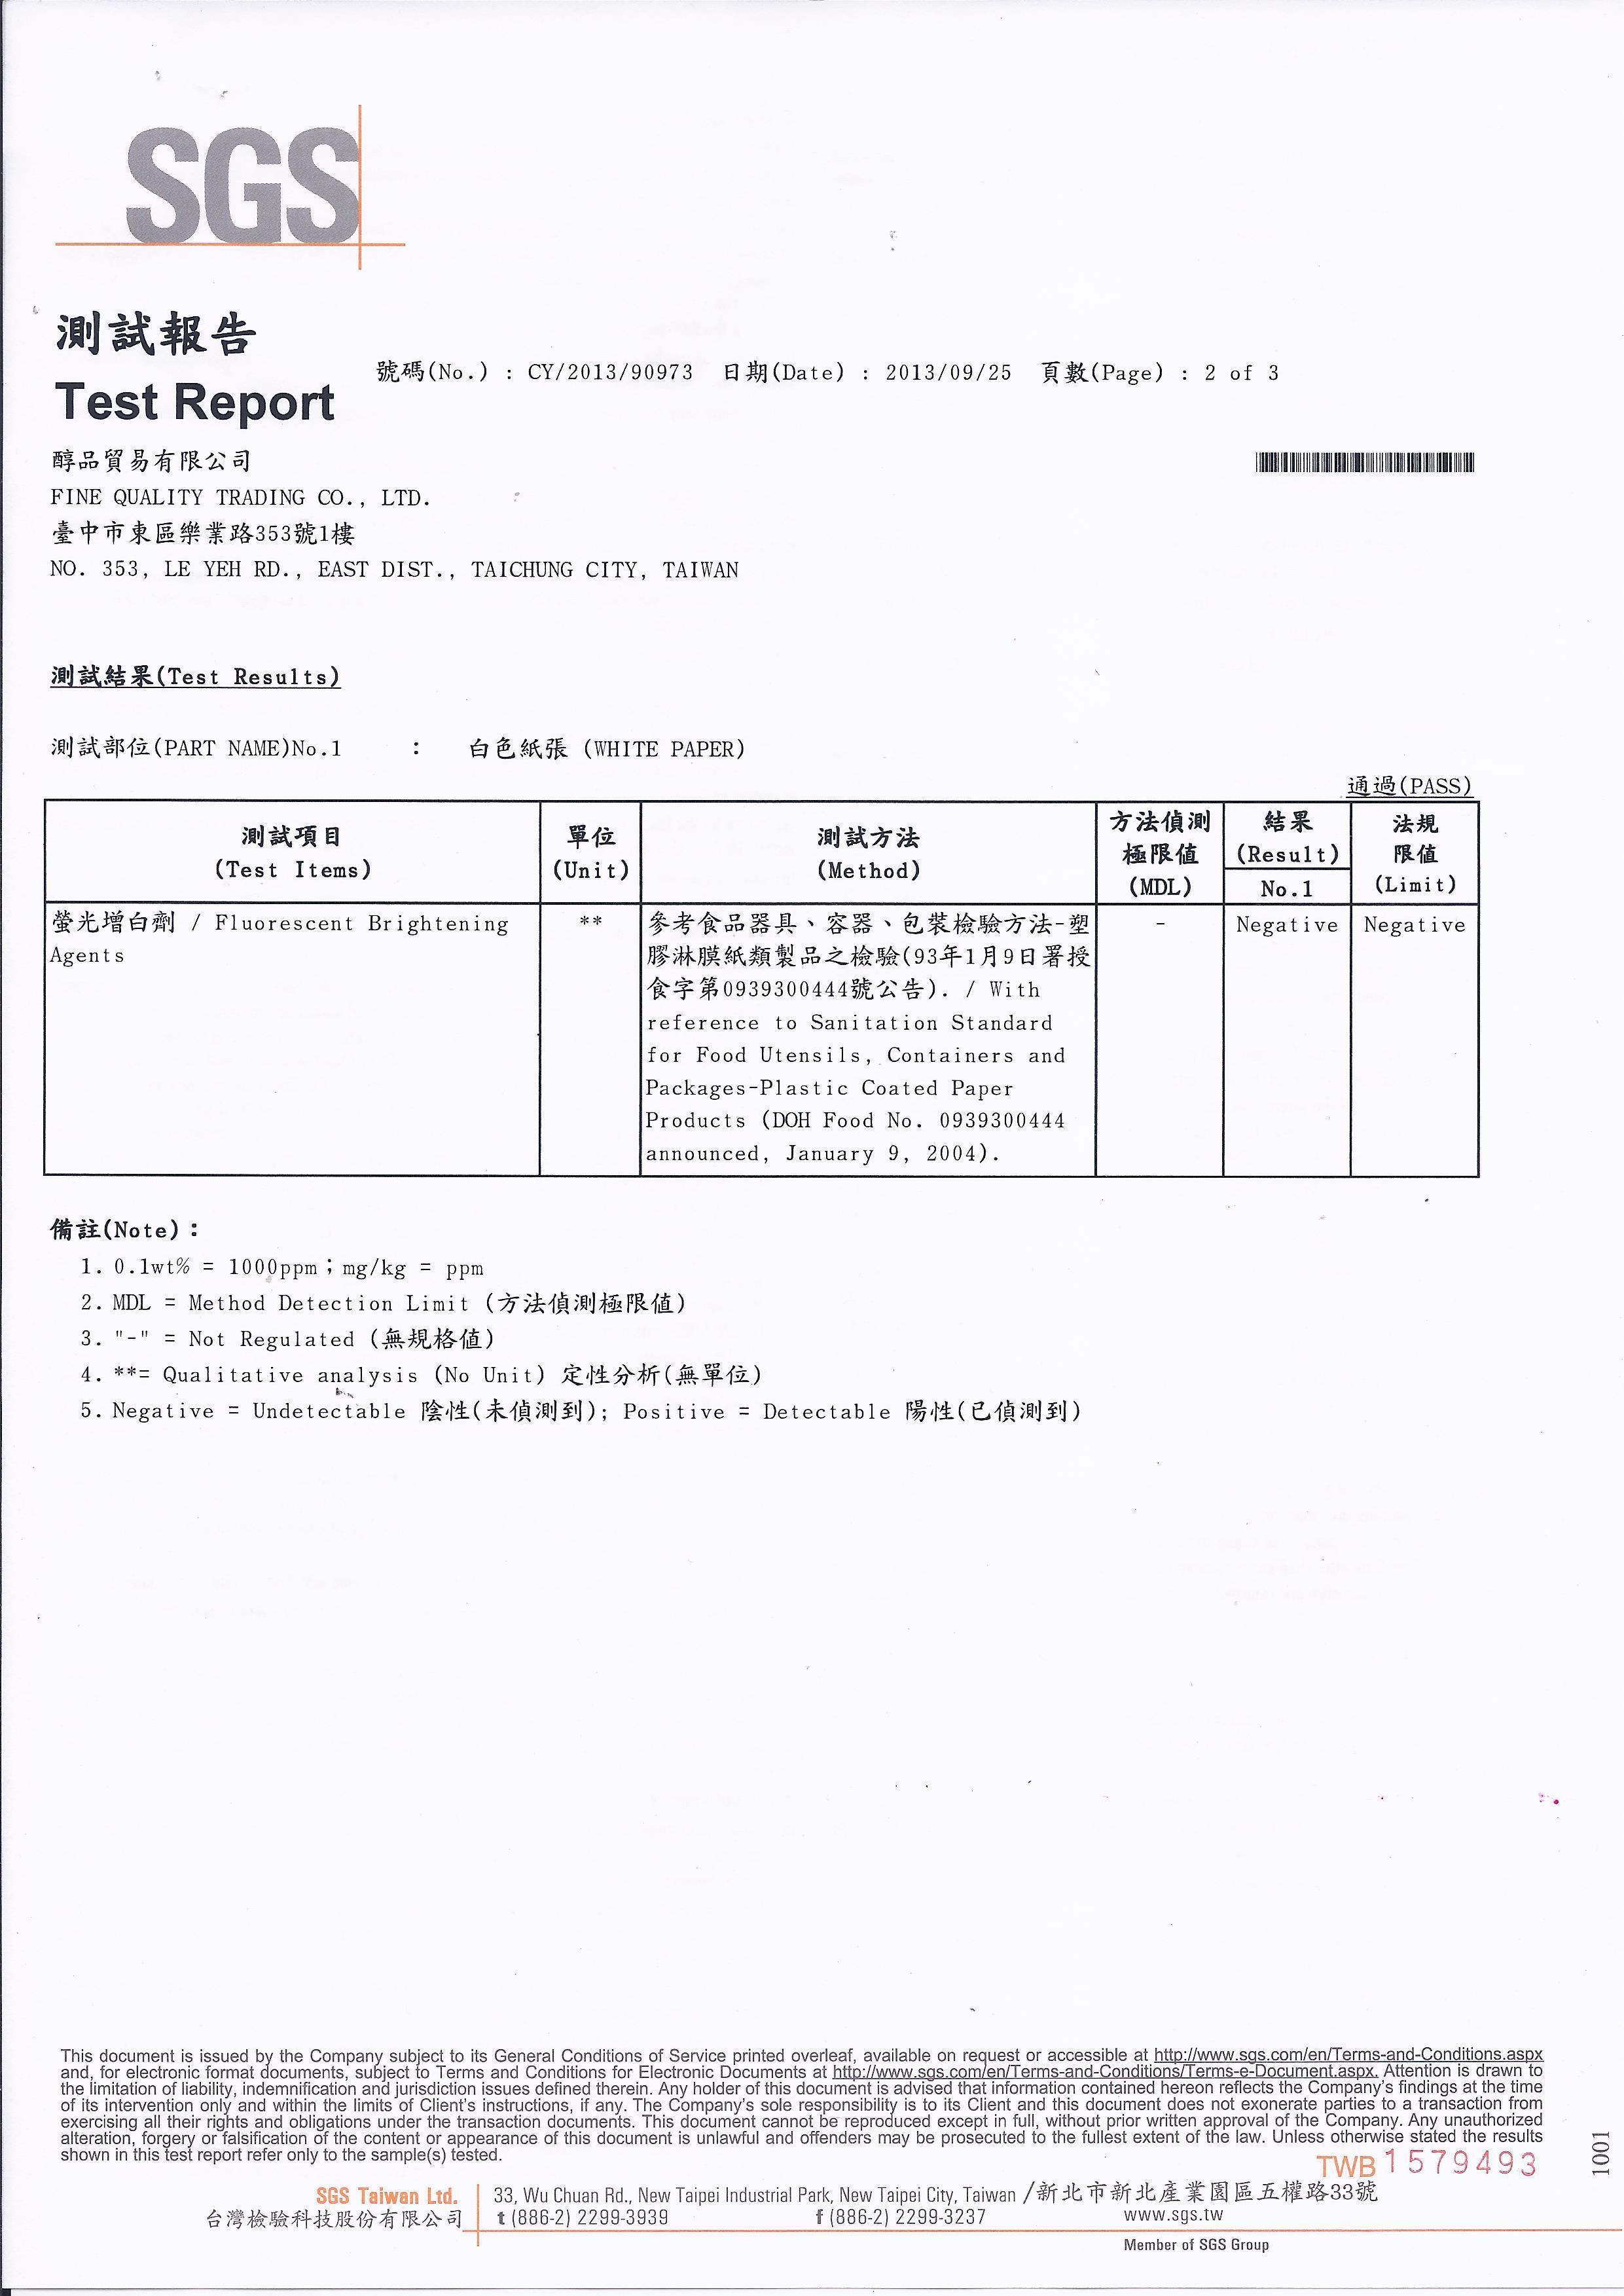 20130926-醇品-SGS測試報告-掛耳2 of 3